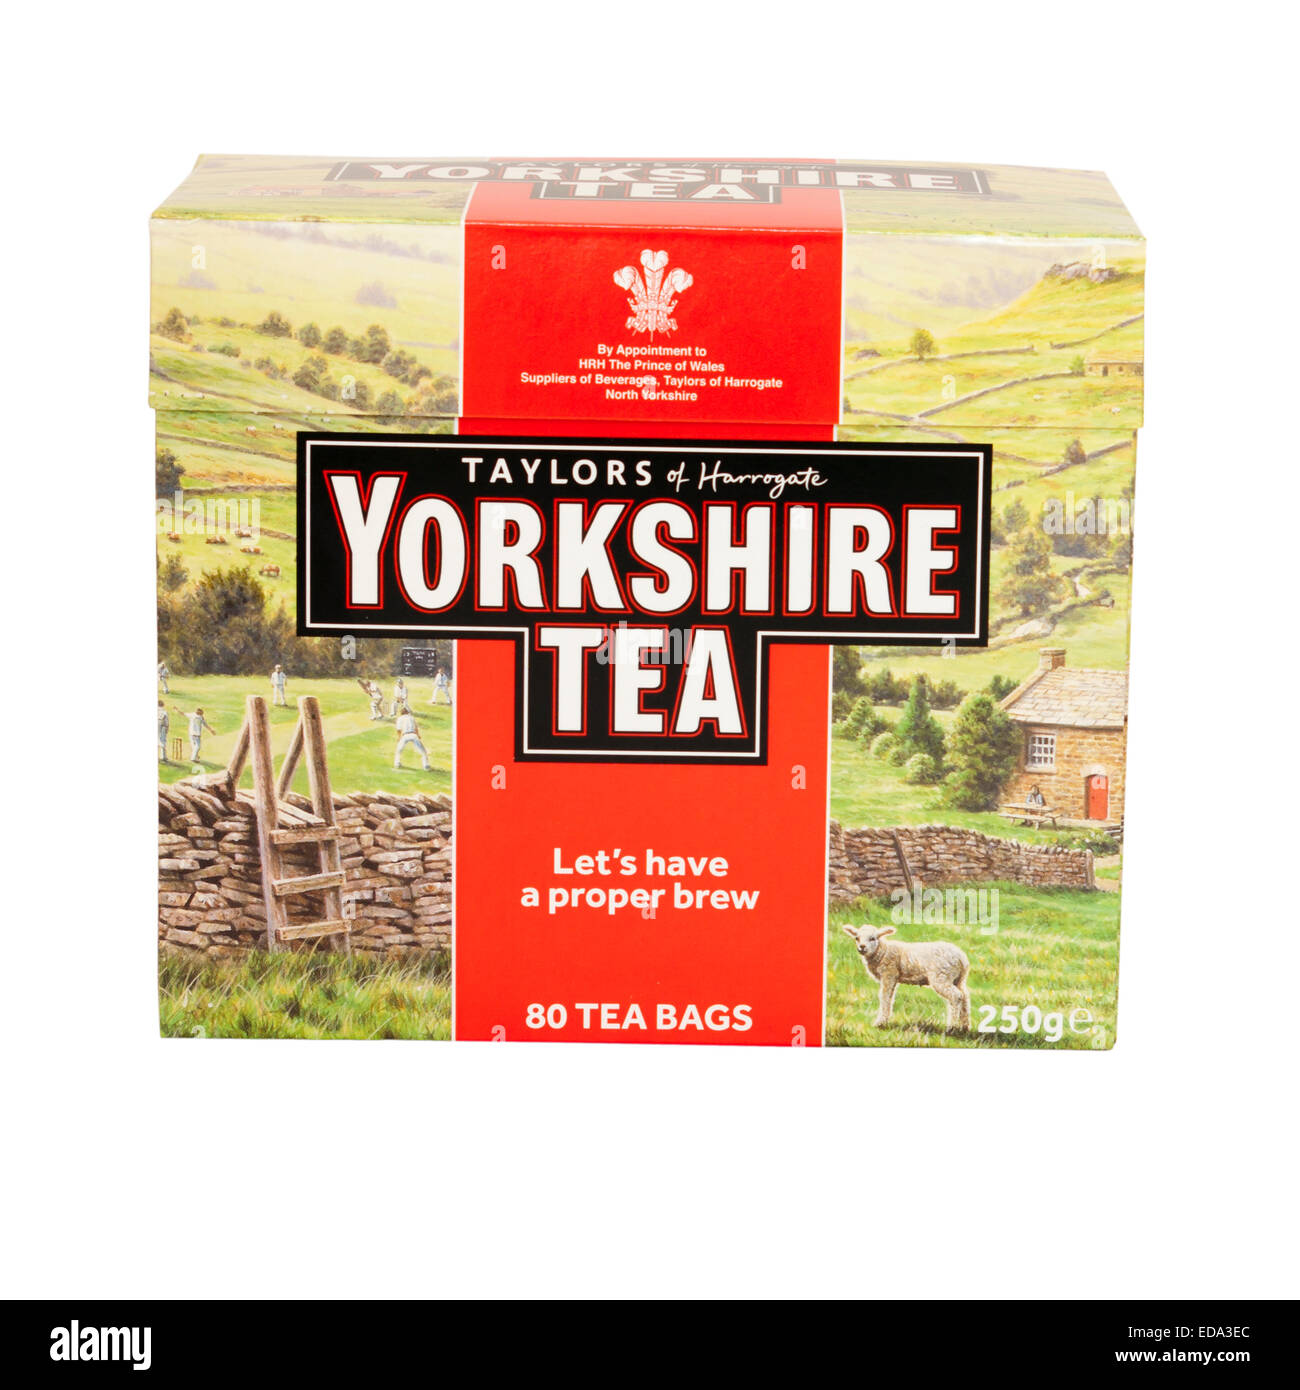 Té en bolsitas Yorkshire Tea Taylors 40 ud.